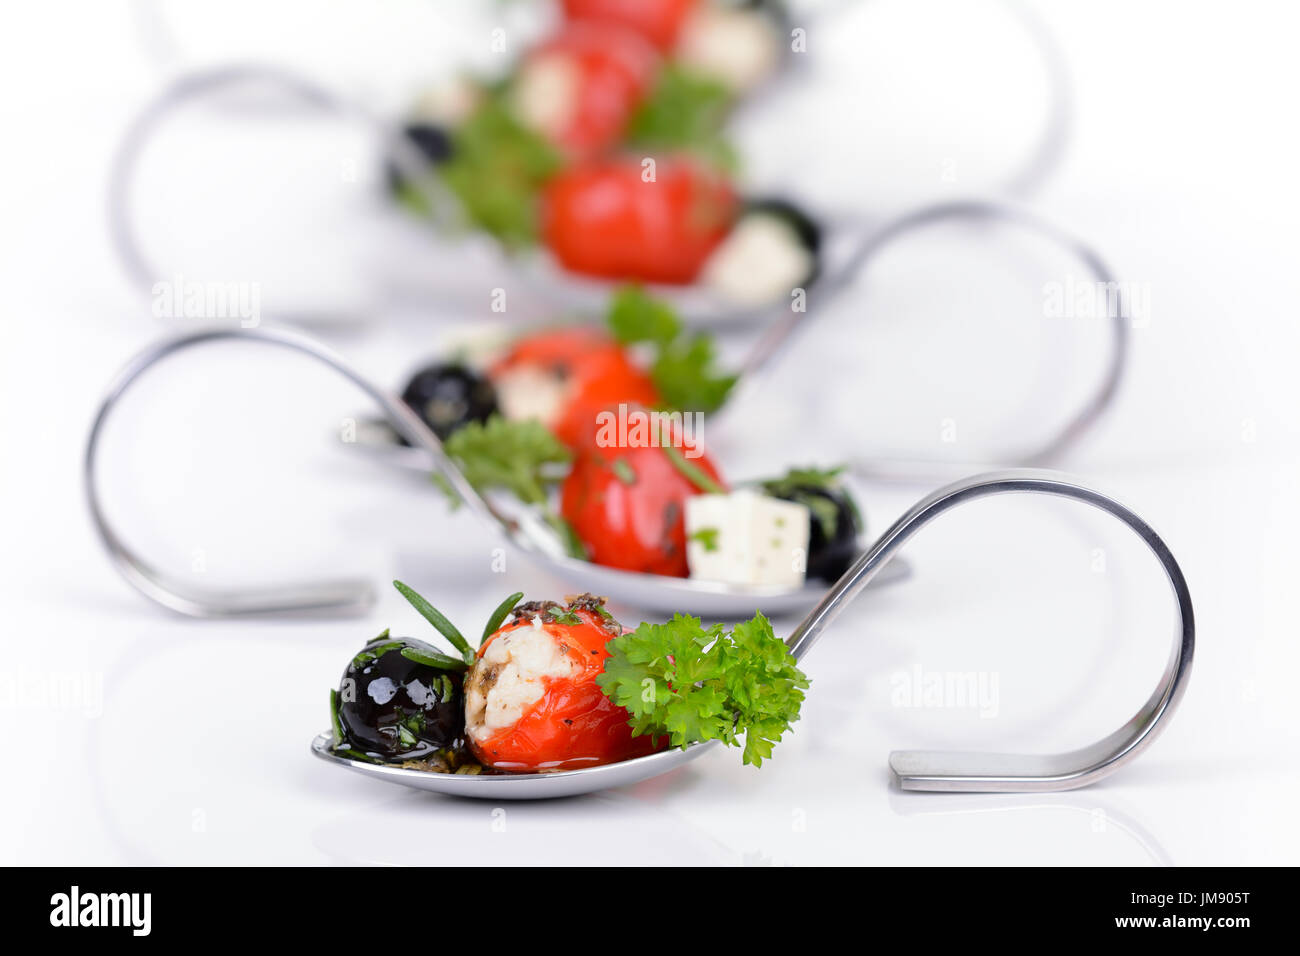 Hot cherry gefüllte Paprika, schwarze Oliven und Feta auf dekorative Vorspeise  Löffel Stockfotografie - Alamy